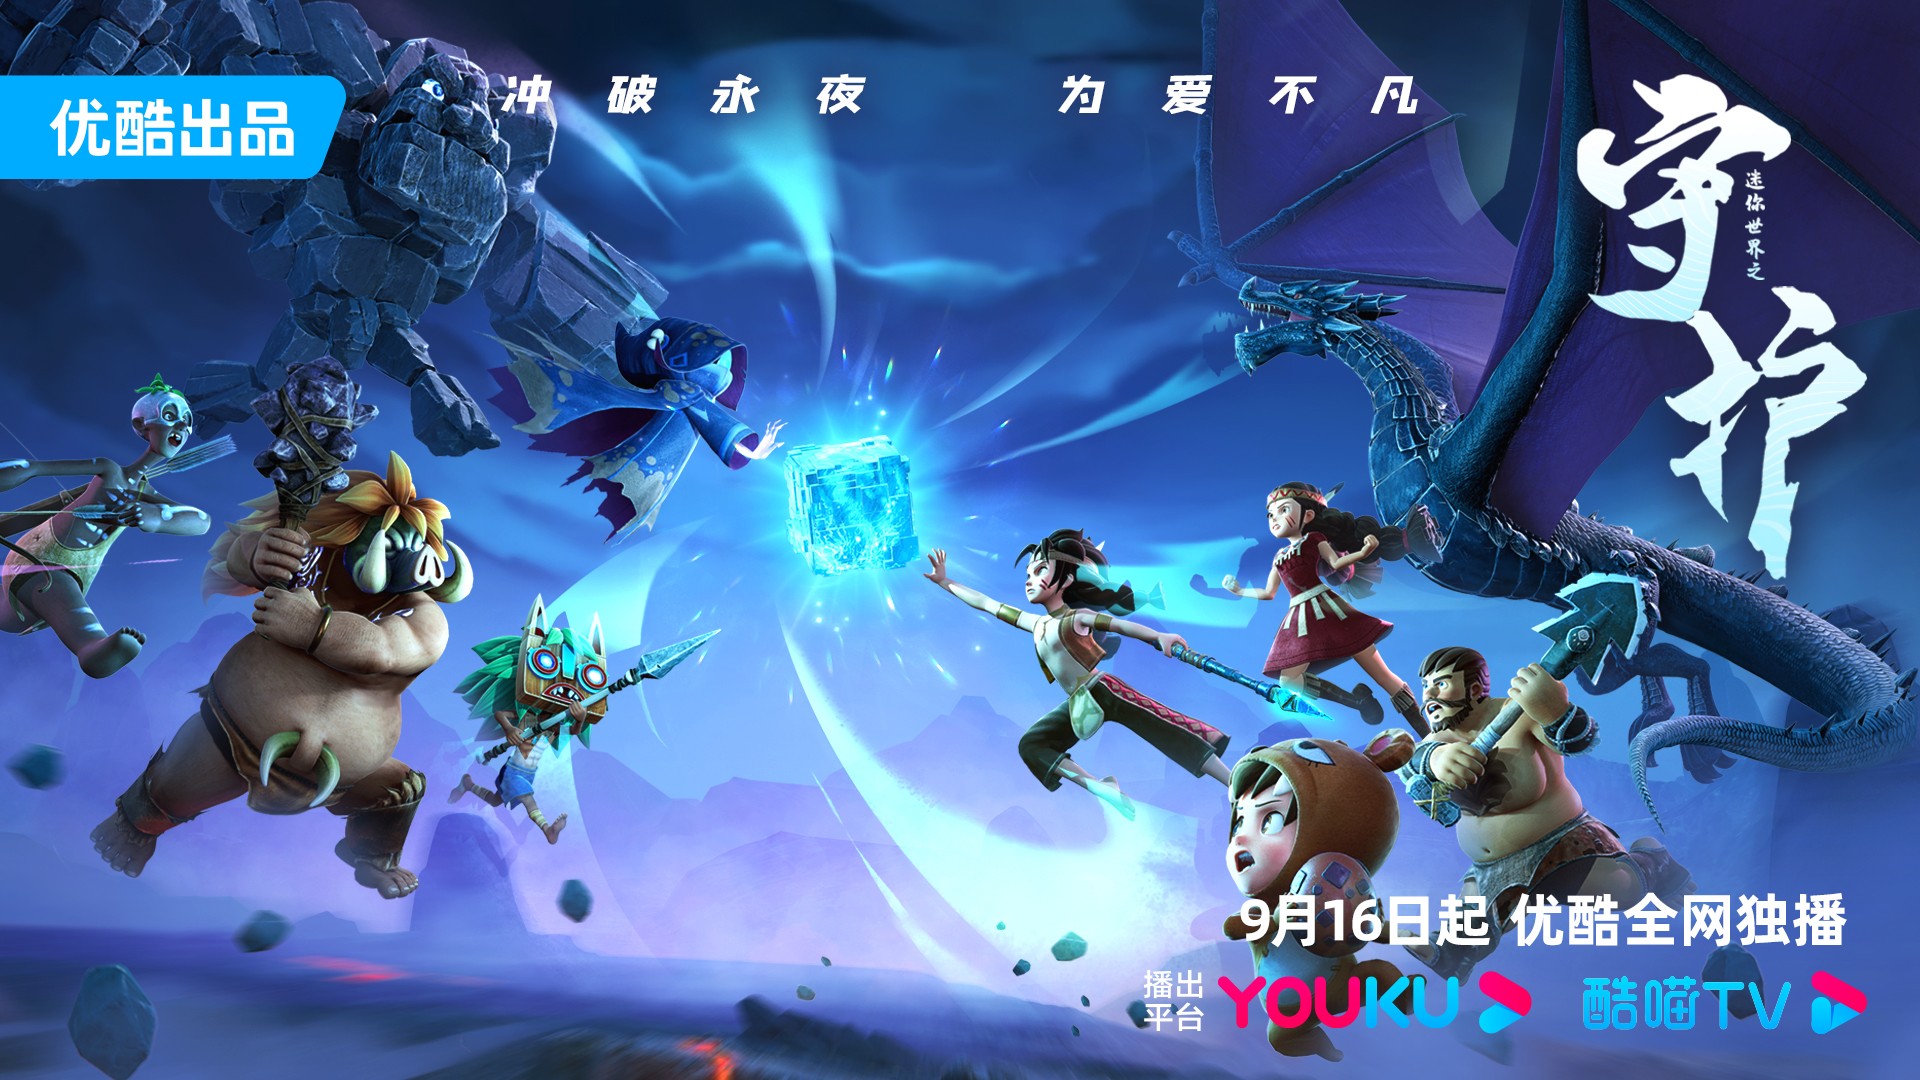 优酷游戏携精品内容:《迷你世界之守护》于9月16日独家开播！